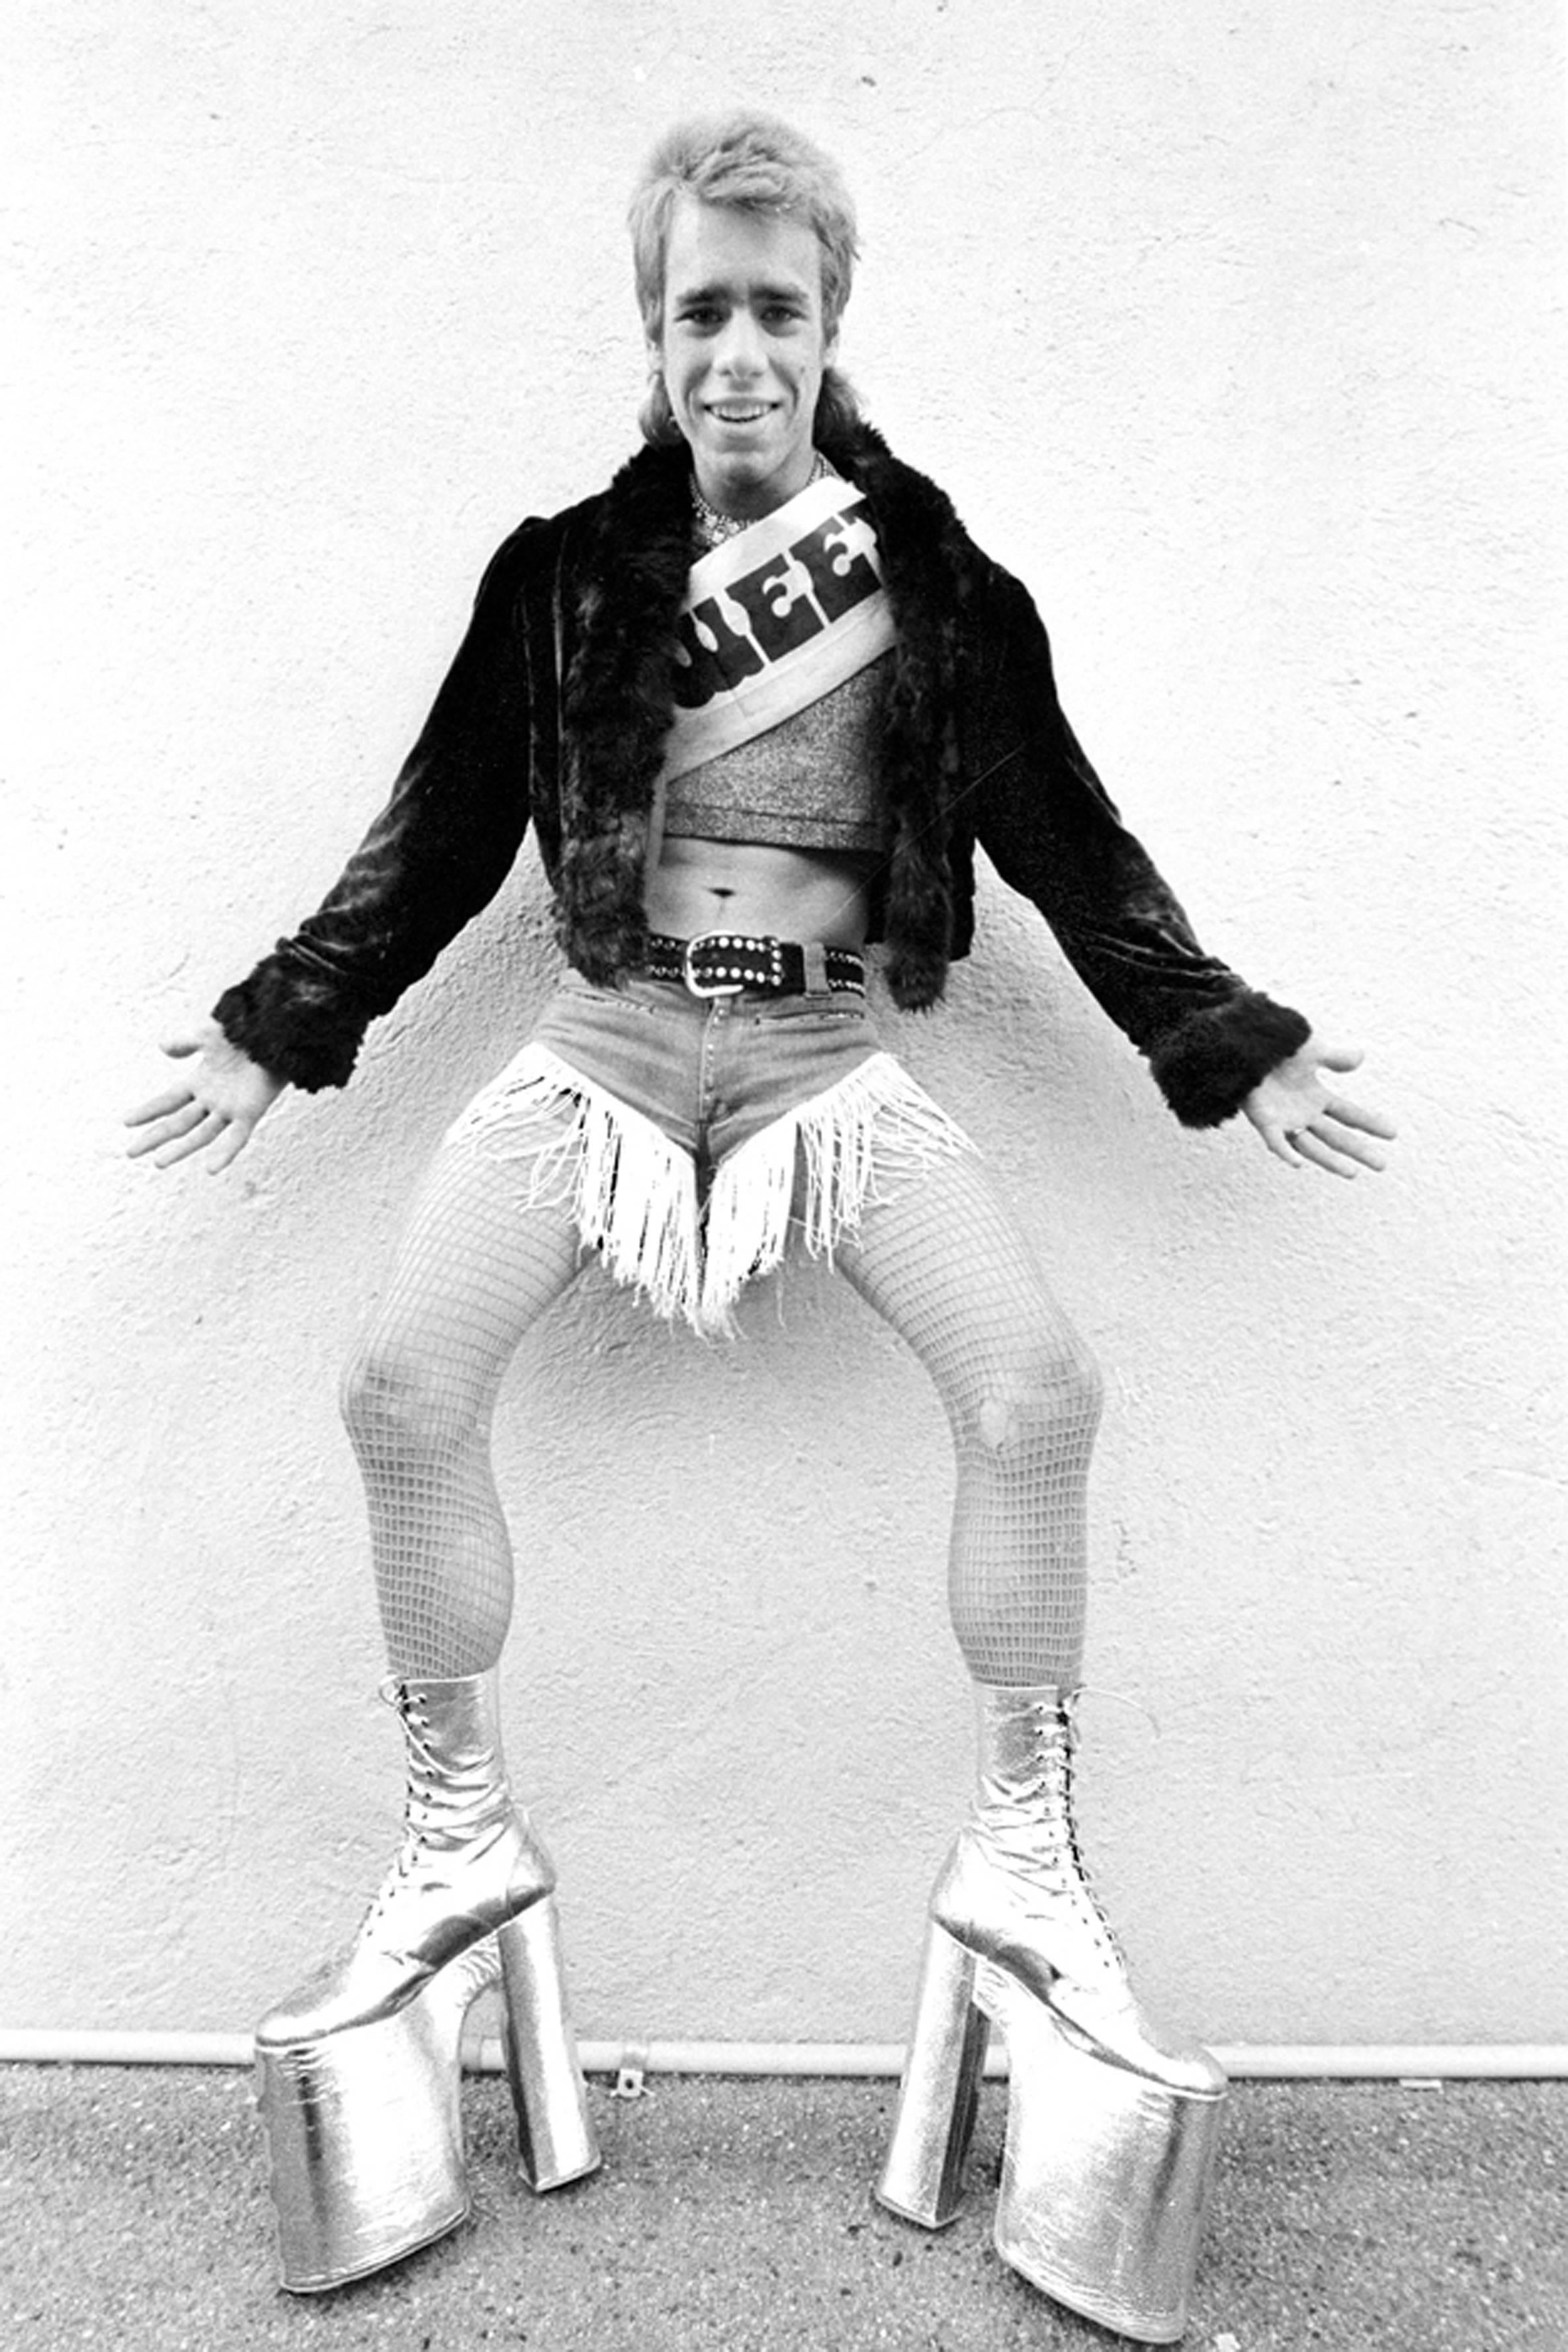 Chuckie Star, 1974, TIME

Star wurde zum vollendeten LA-Party-Kid, das ein gefragter Gast auf Partys war. Als die Szene vorbei war, ging er mit den anderen weiter. Die Schuhe der Stars wurden von Fred Slatten hergestellt, West-Hollywoods Schuhmacher